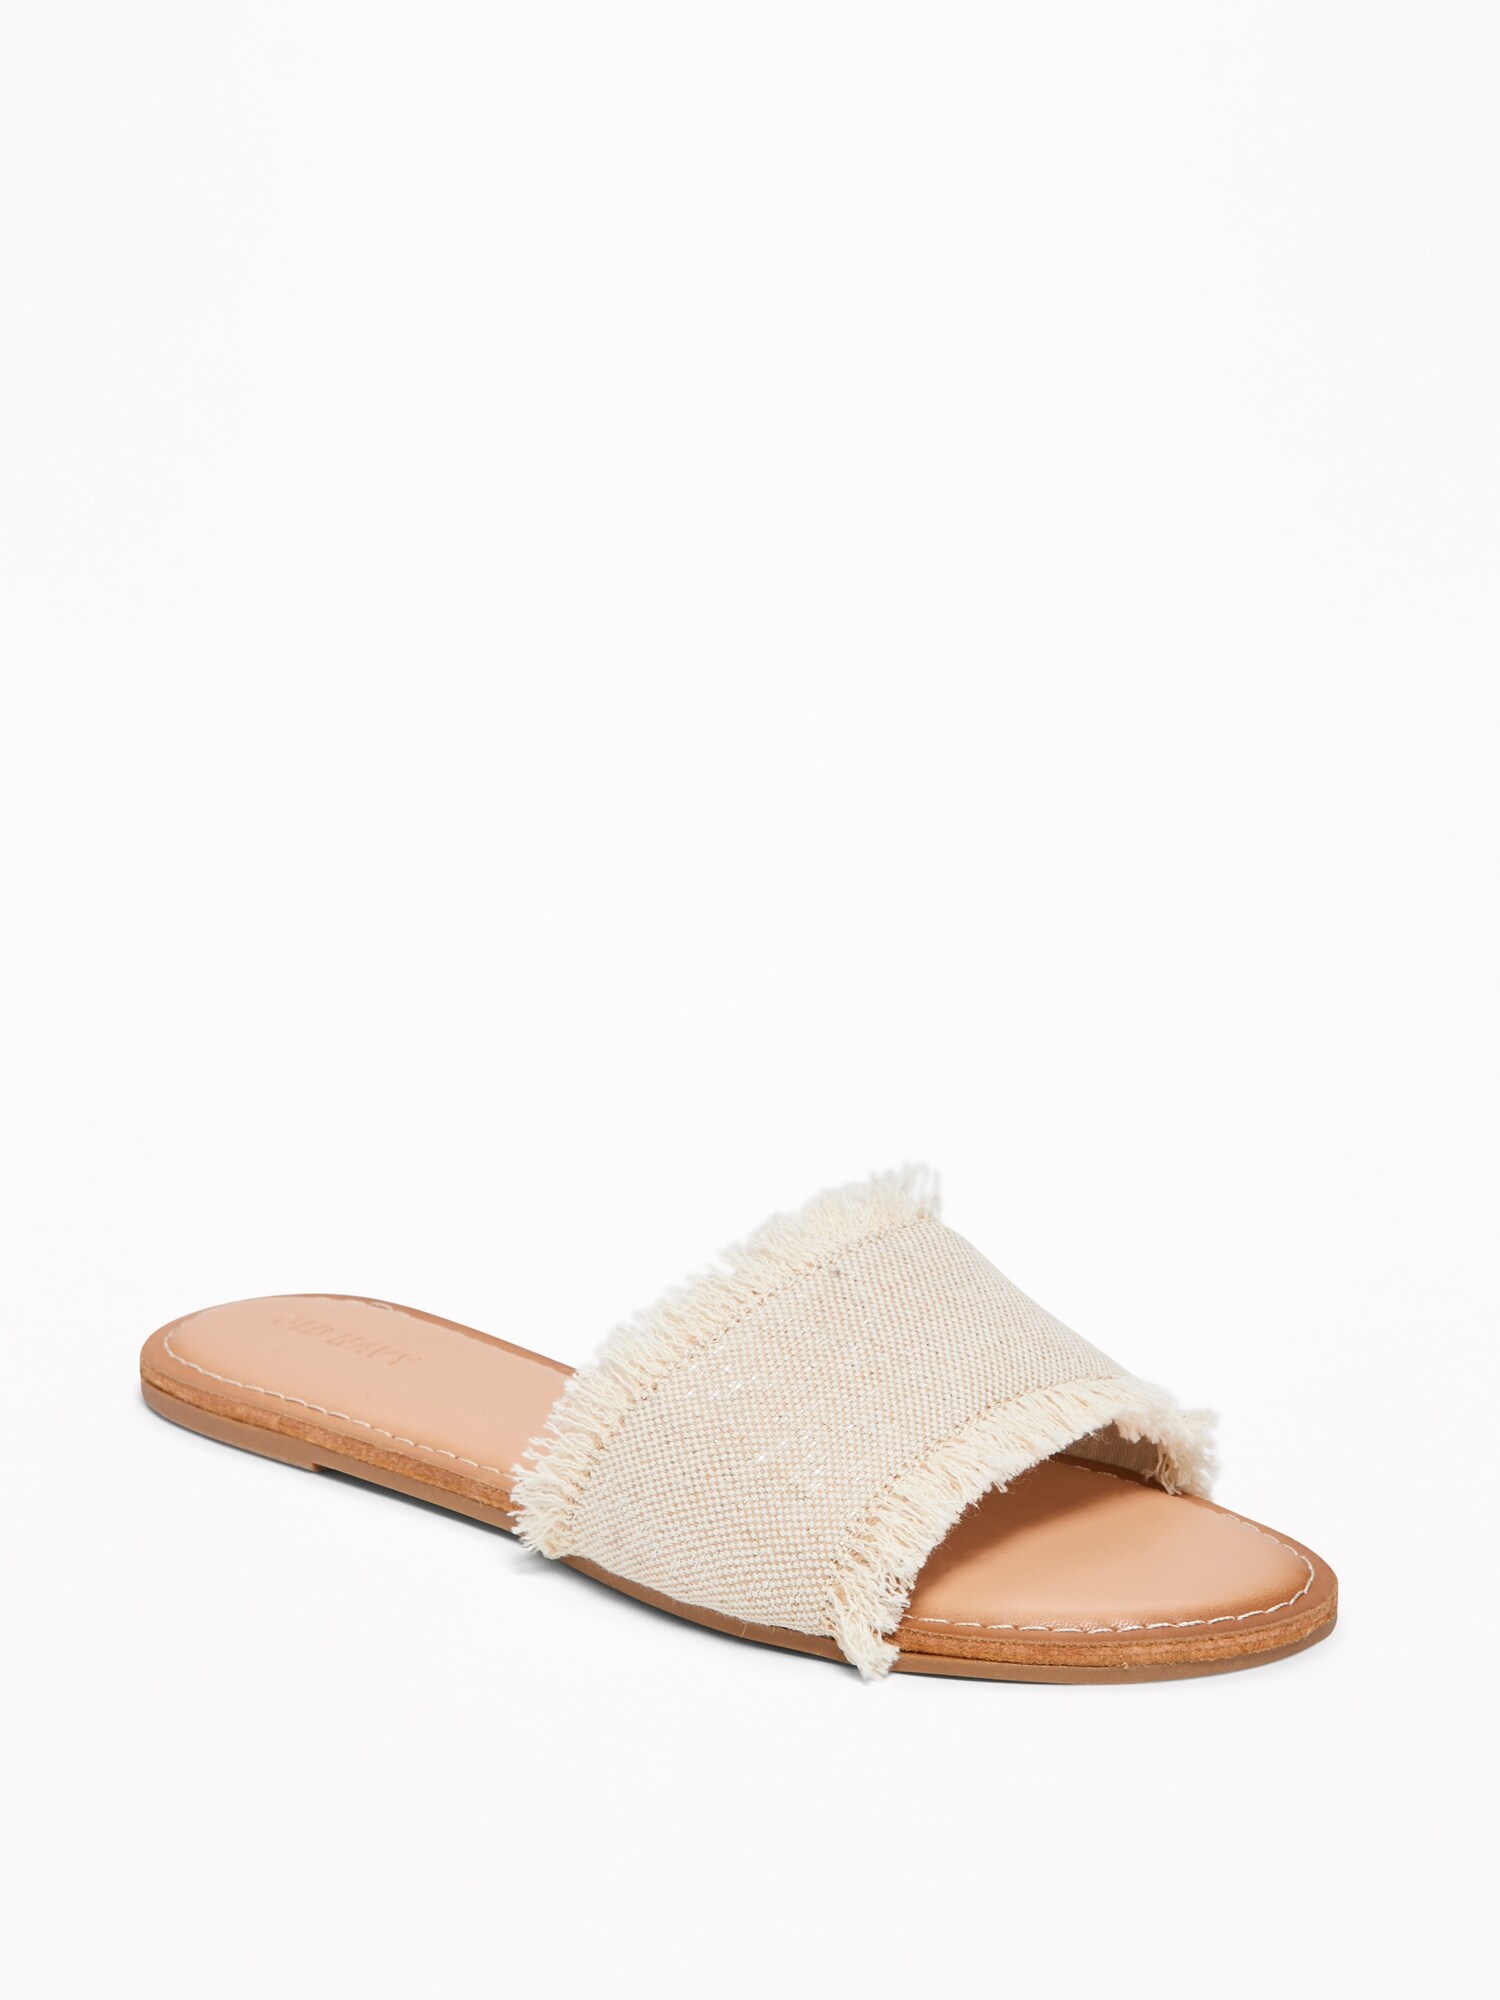 Fringed-Textile Slide Sandals for Women | Old Navy